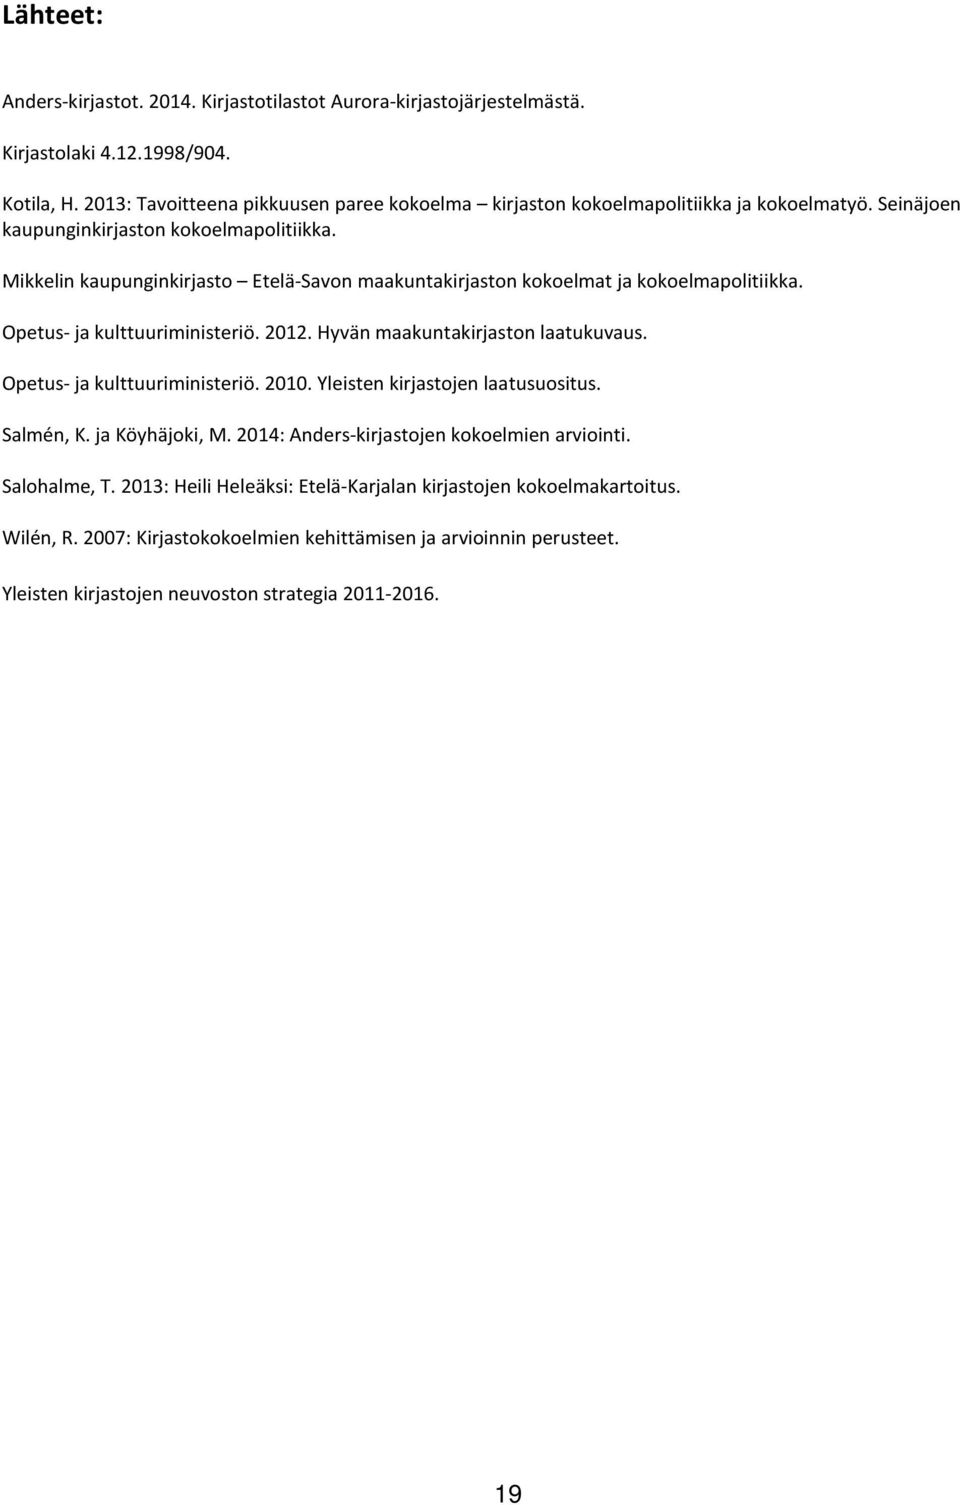 Mikkelin kaupunginkirjasto Etelä-Savon maakuntakirjaston kokoelmat ja kokoelmapolitiikka. Opetus- ja kulttuuriministeriö. 2012. Hyvän maakuntakirjaston laatukuvaus.